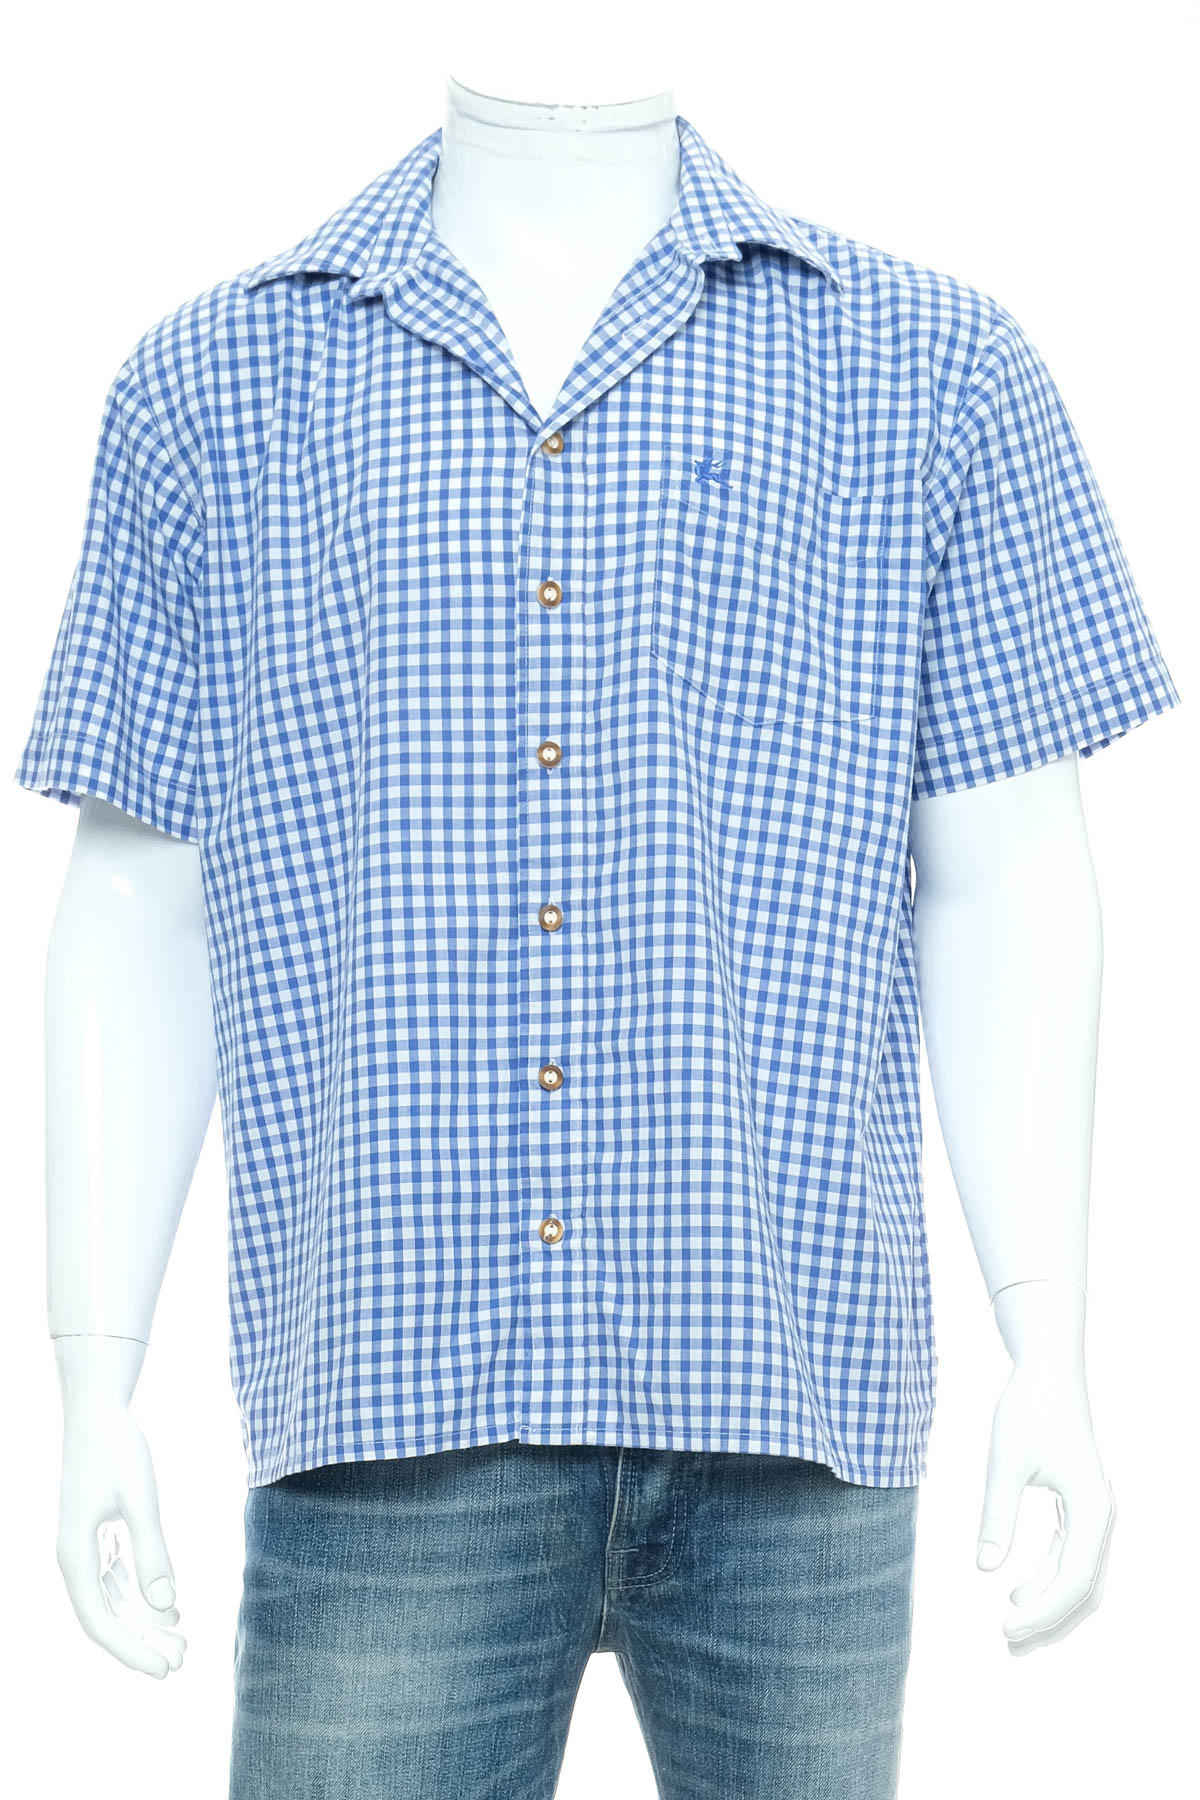 Ανδρικό πουκάμισο - OS Trachten - 0